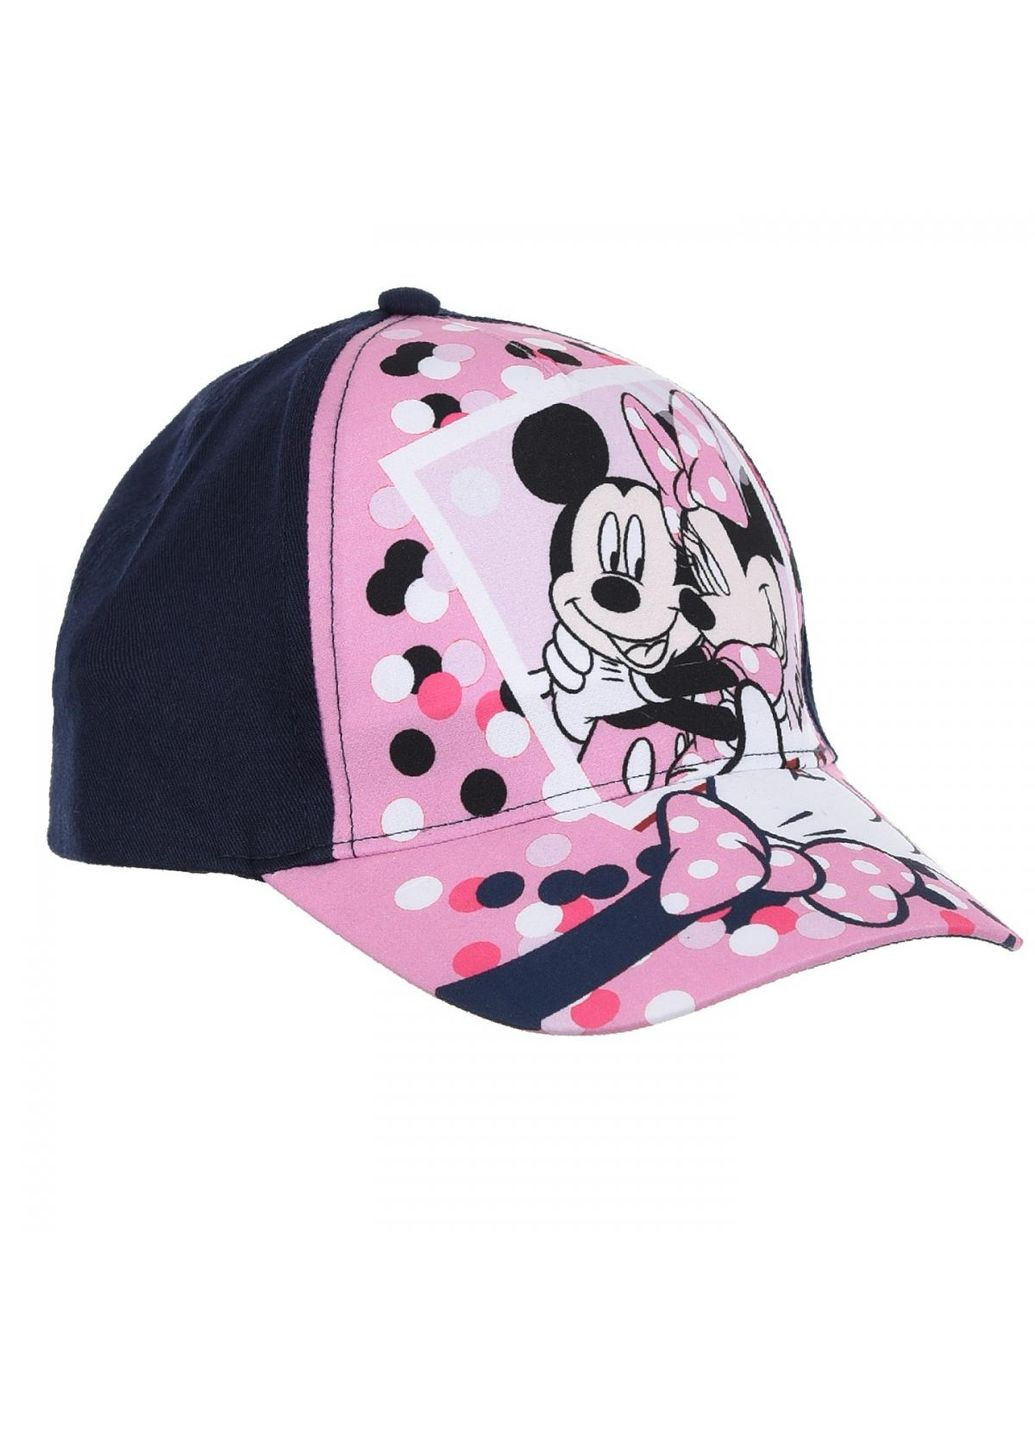 Кепка Minnie Mouse (Минни Маус) UE40362 EU Disney кепка (290252681)